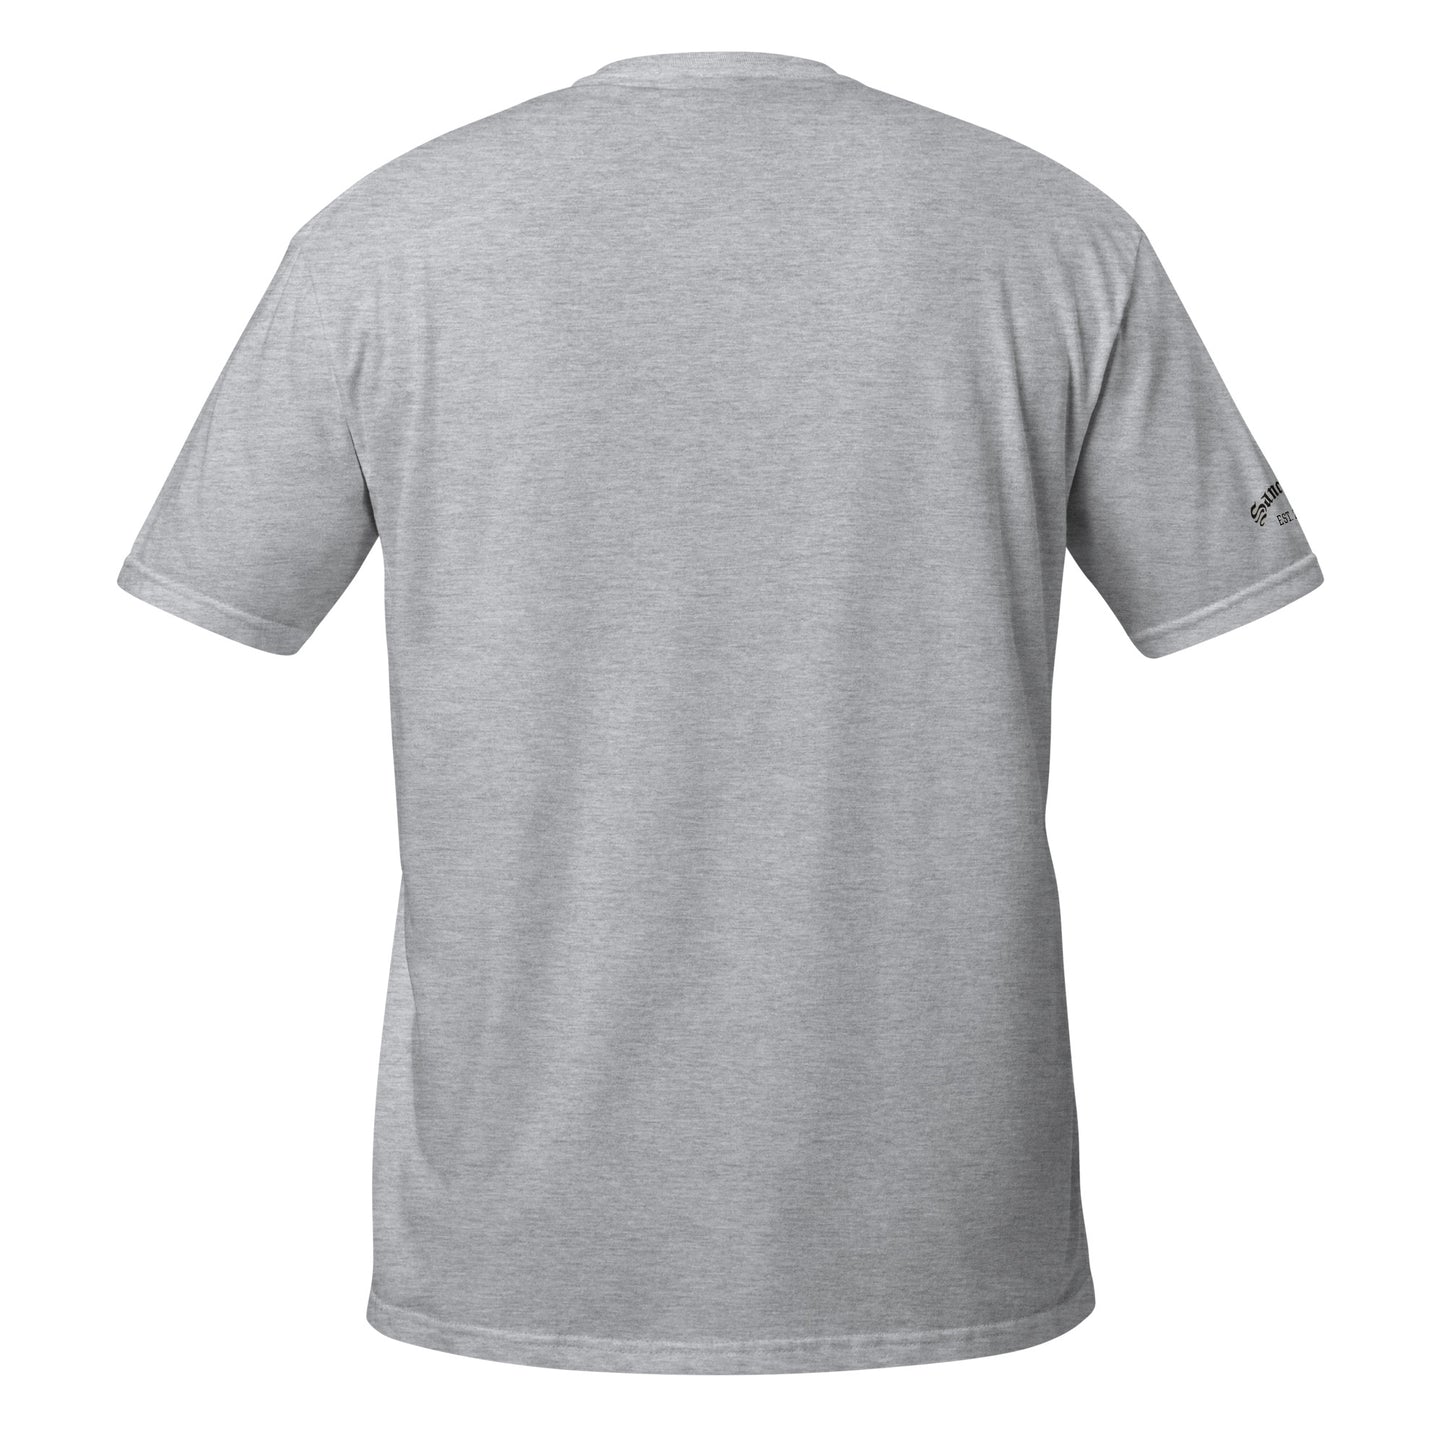 YESHUA- Short-Sleeve Unisex T-Shirt